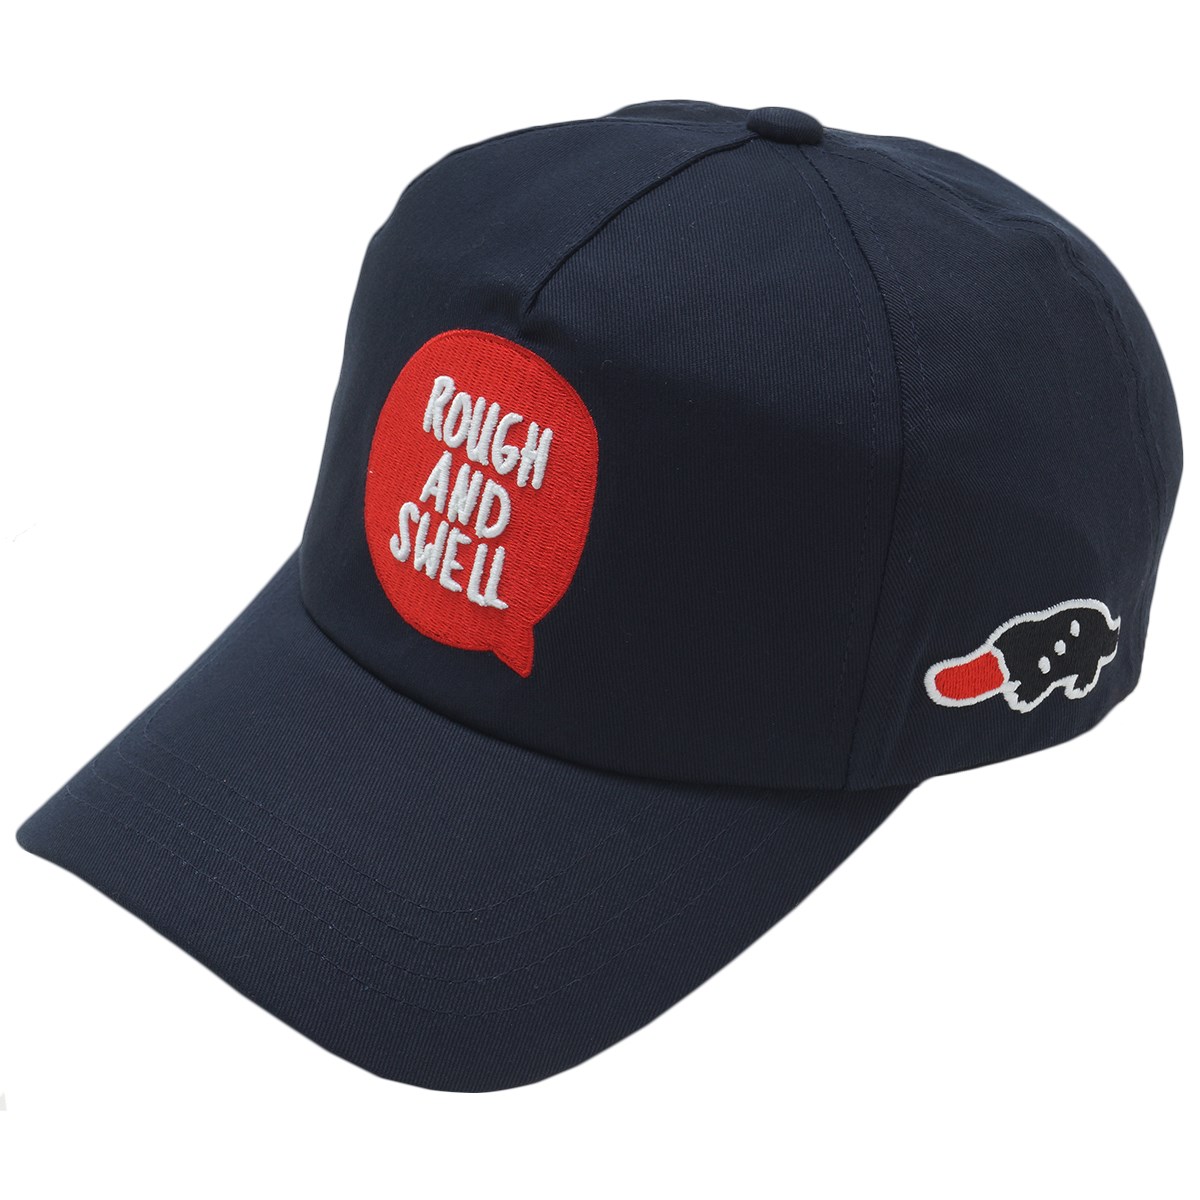  [2018年モデル] ラフ&スウェル ベースボールキャップ ゴルフウェア 帽子